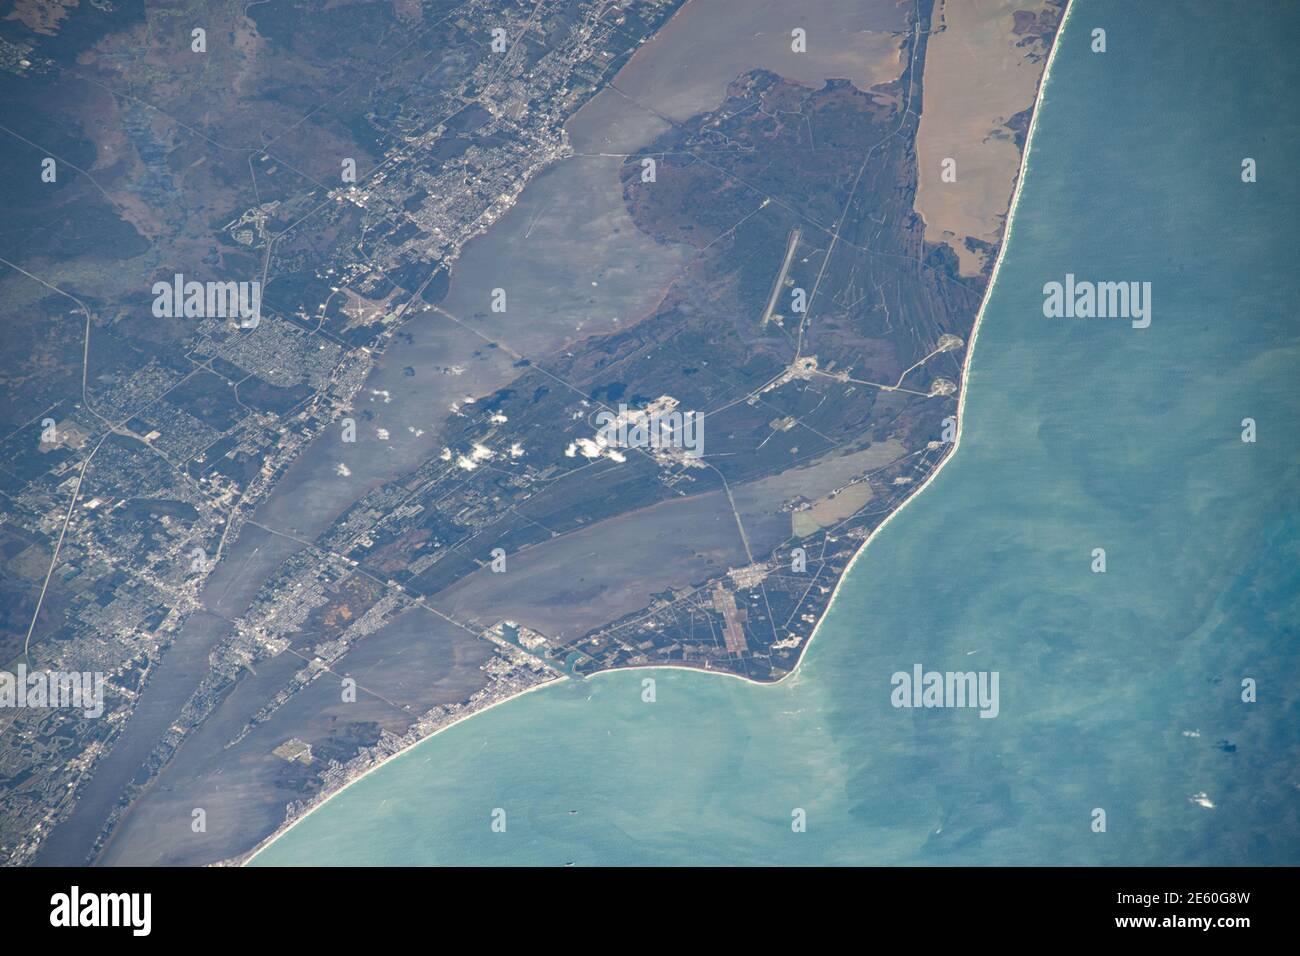 Cape Canaveral e il Kennedy Space Center lungo la costa della Florida negli Stati Uniti mentre la Stazione spaziale Internazionale si trova a 261 miglia sopra la superficie delle Terre. Foto Stock